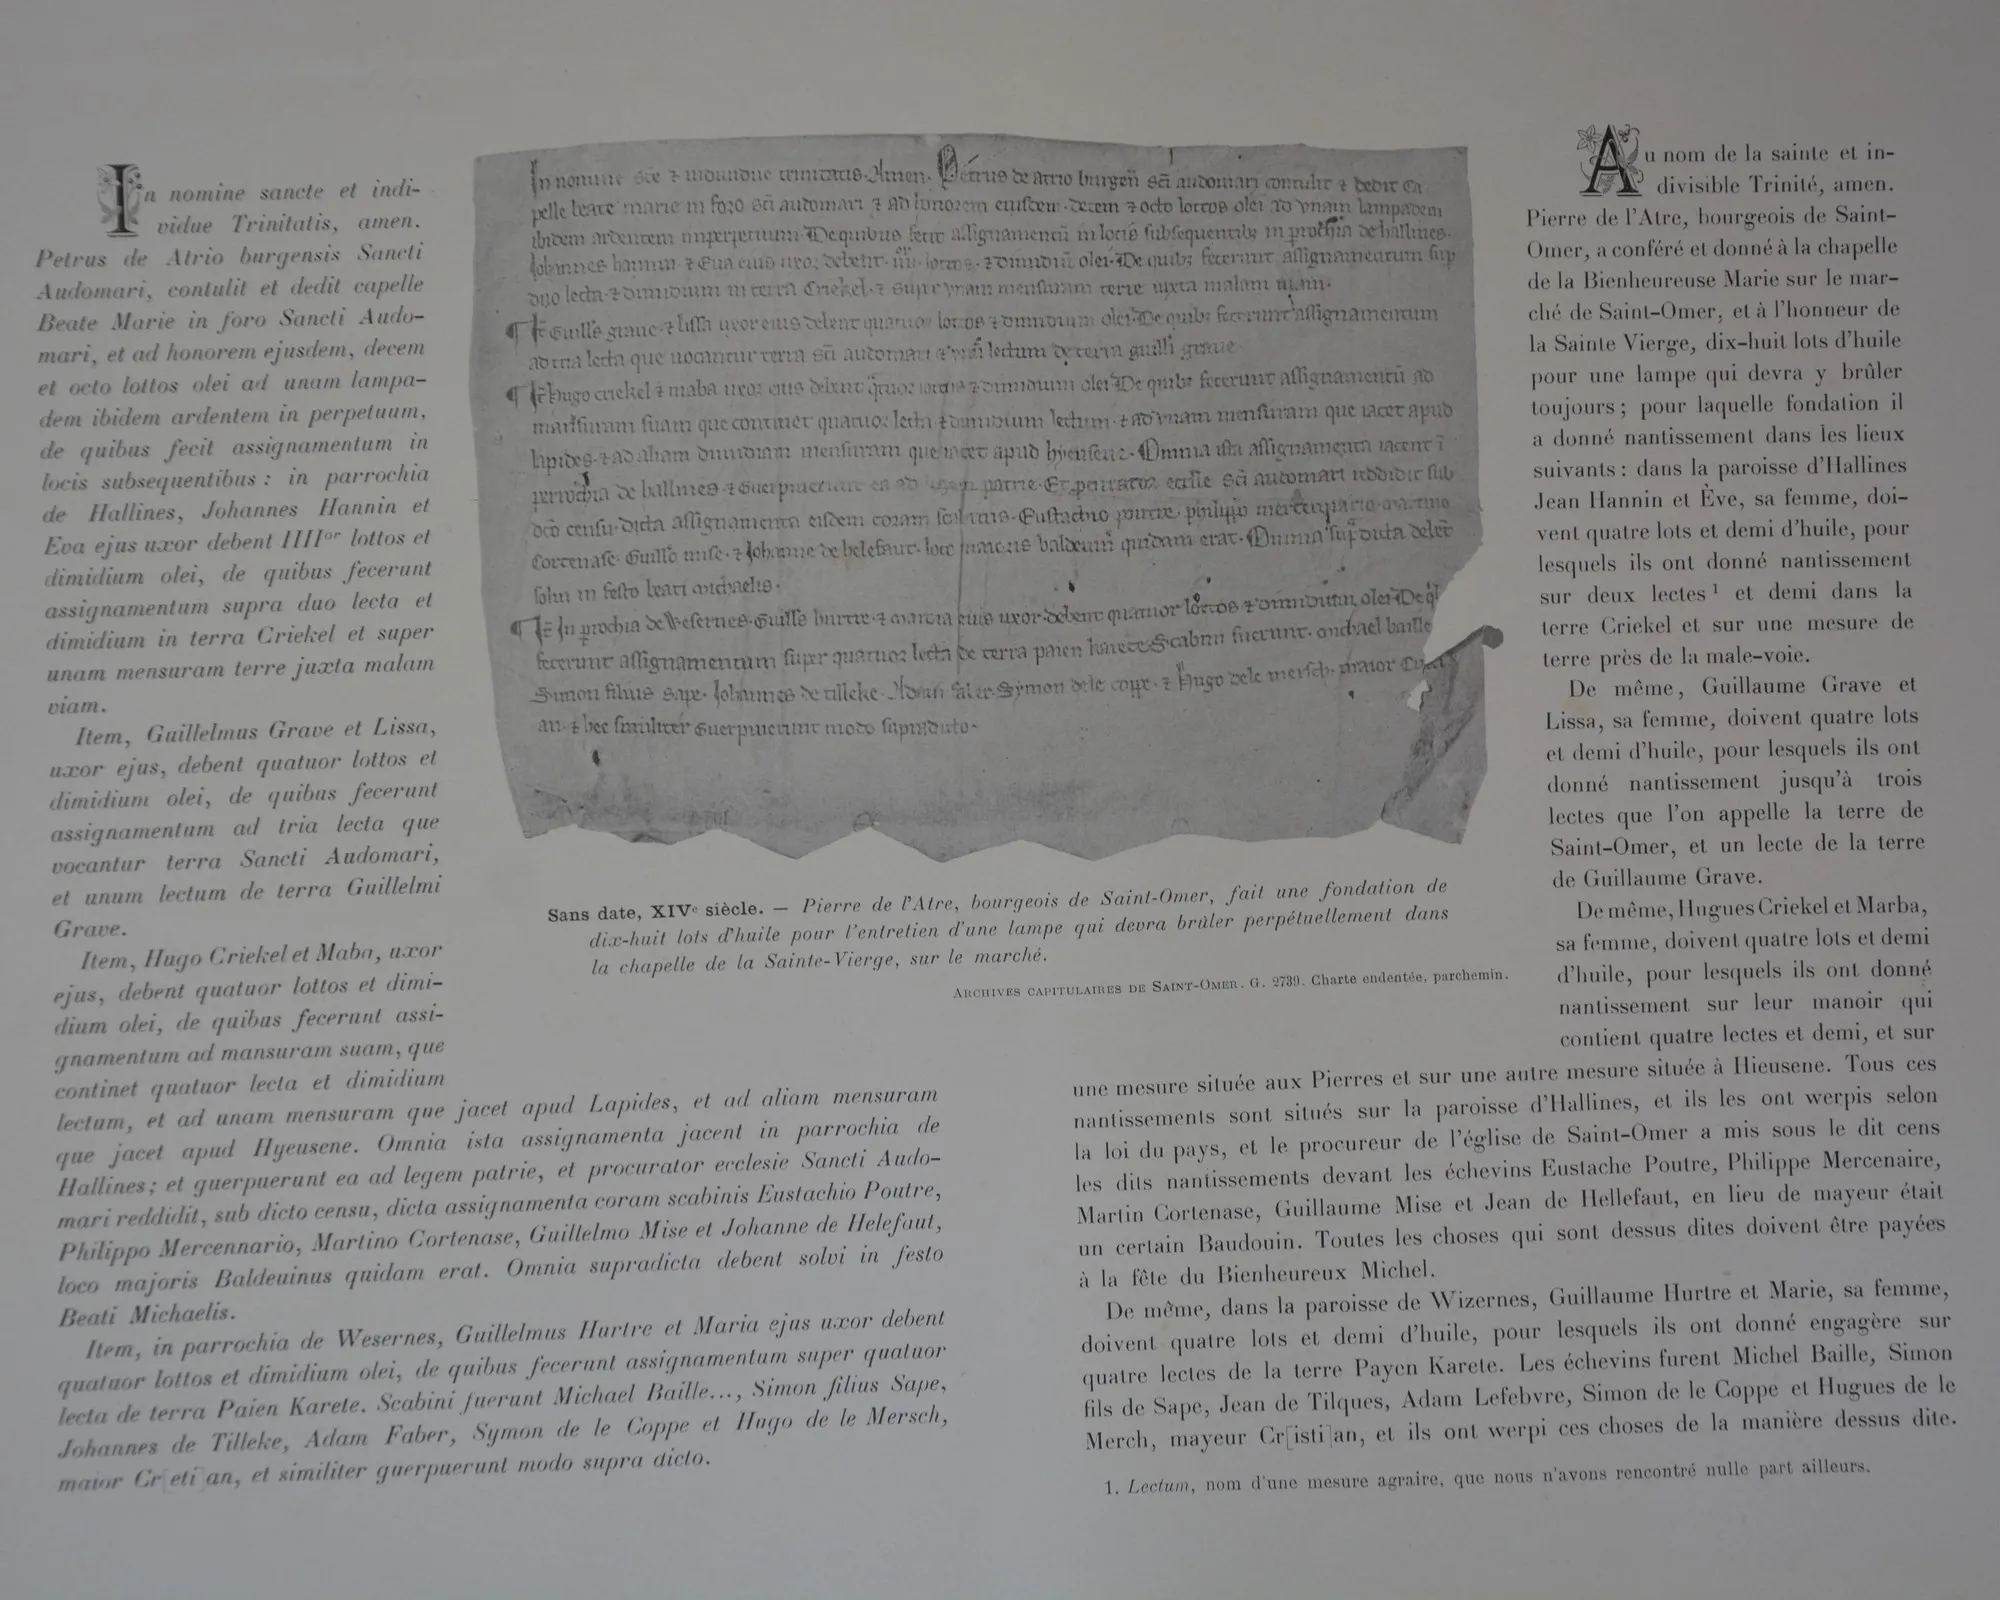 Charte de la Fondation de Pierre de L'Atre pour le Luminaire XIV ème siècle